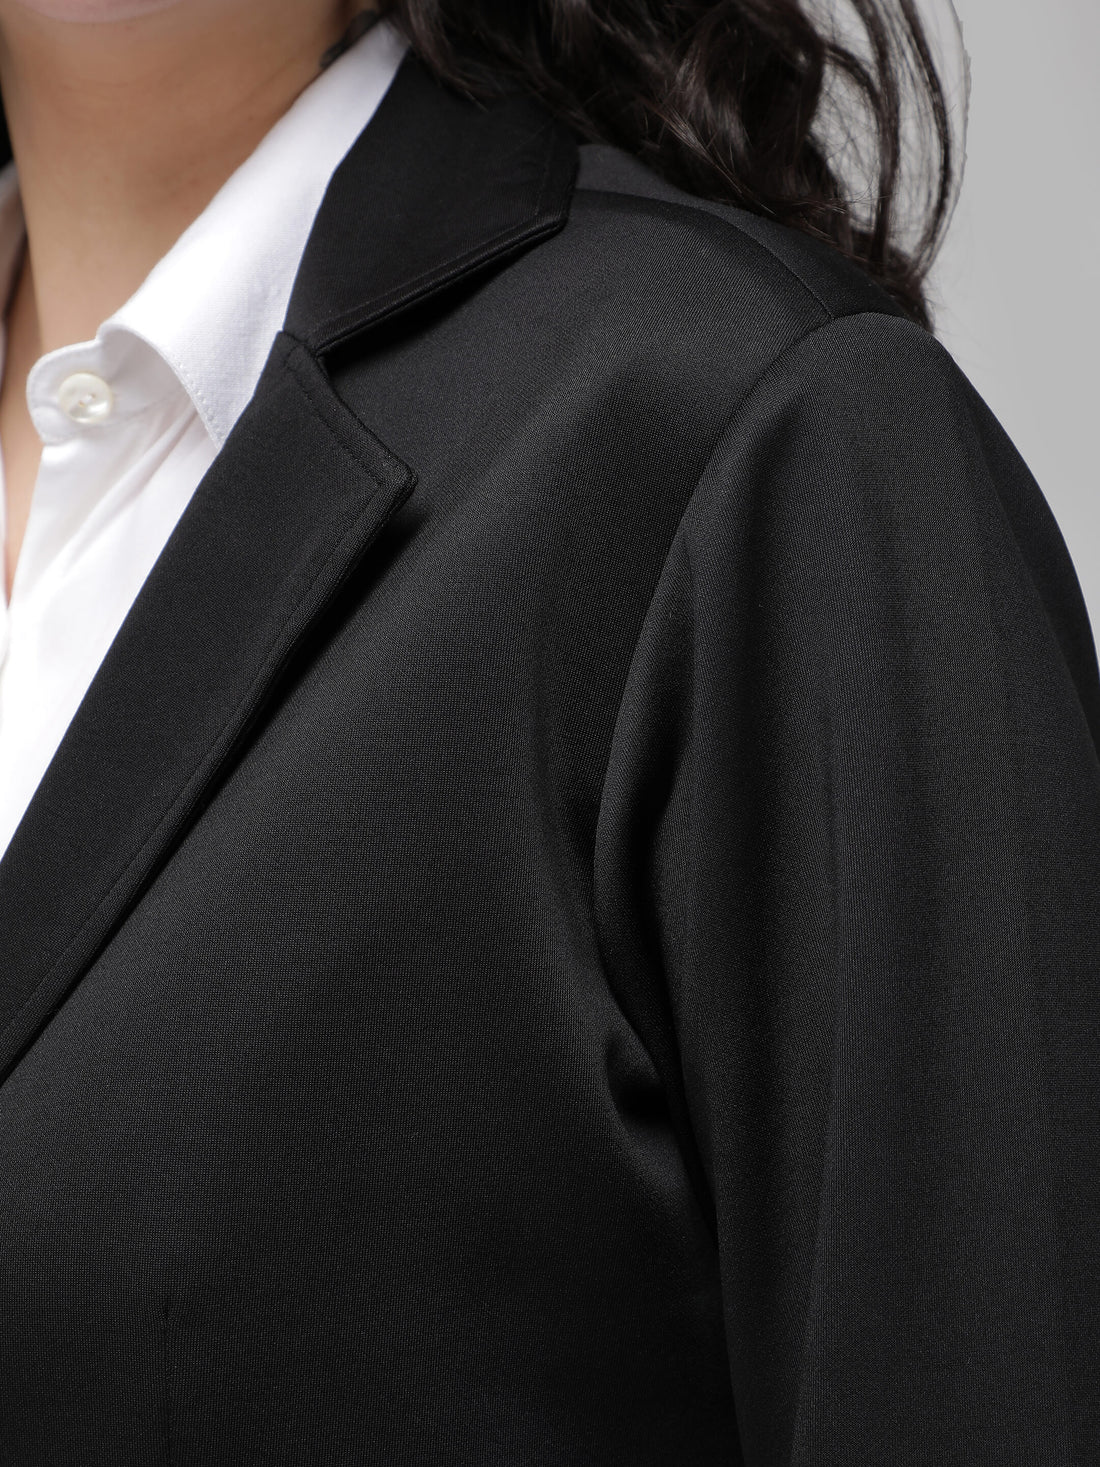 Black jacket - formal